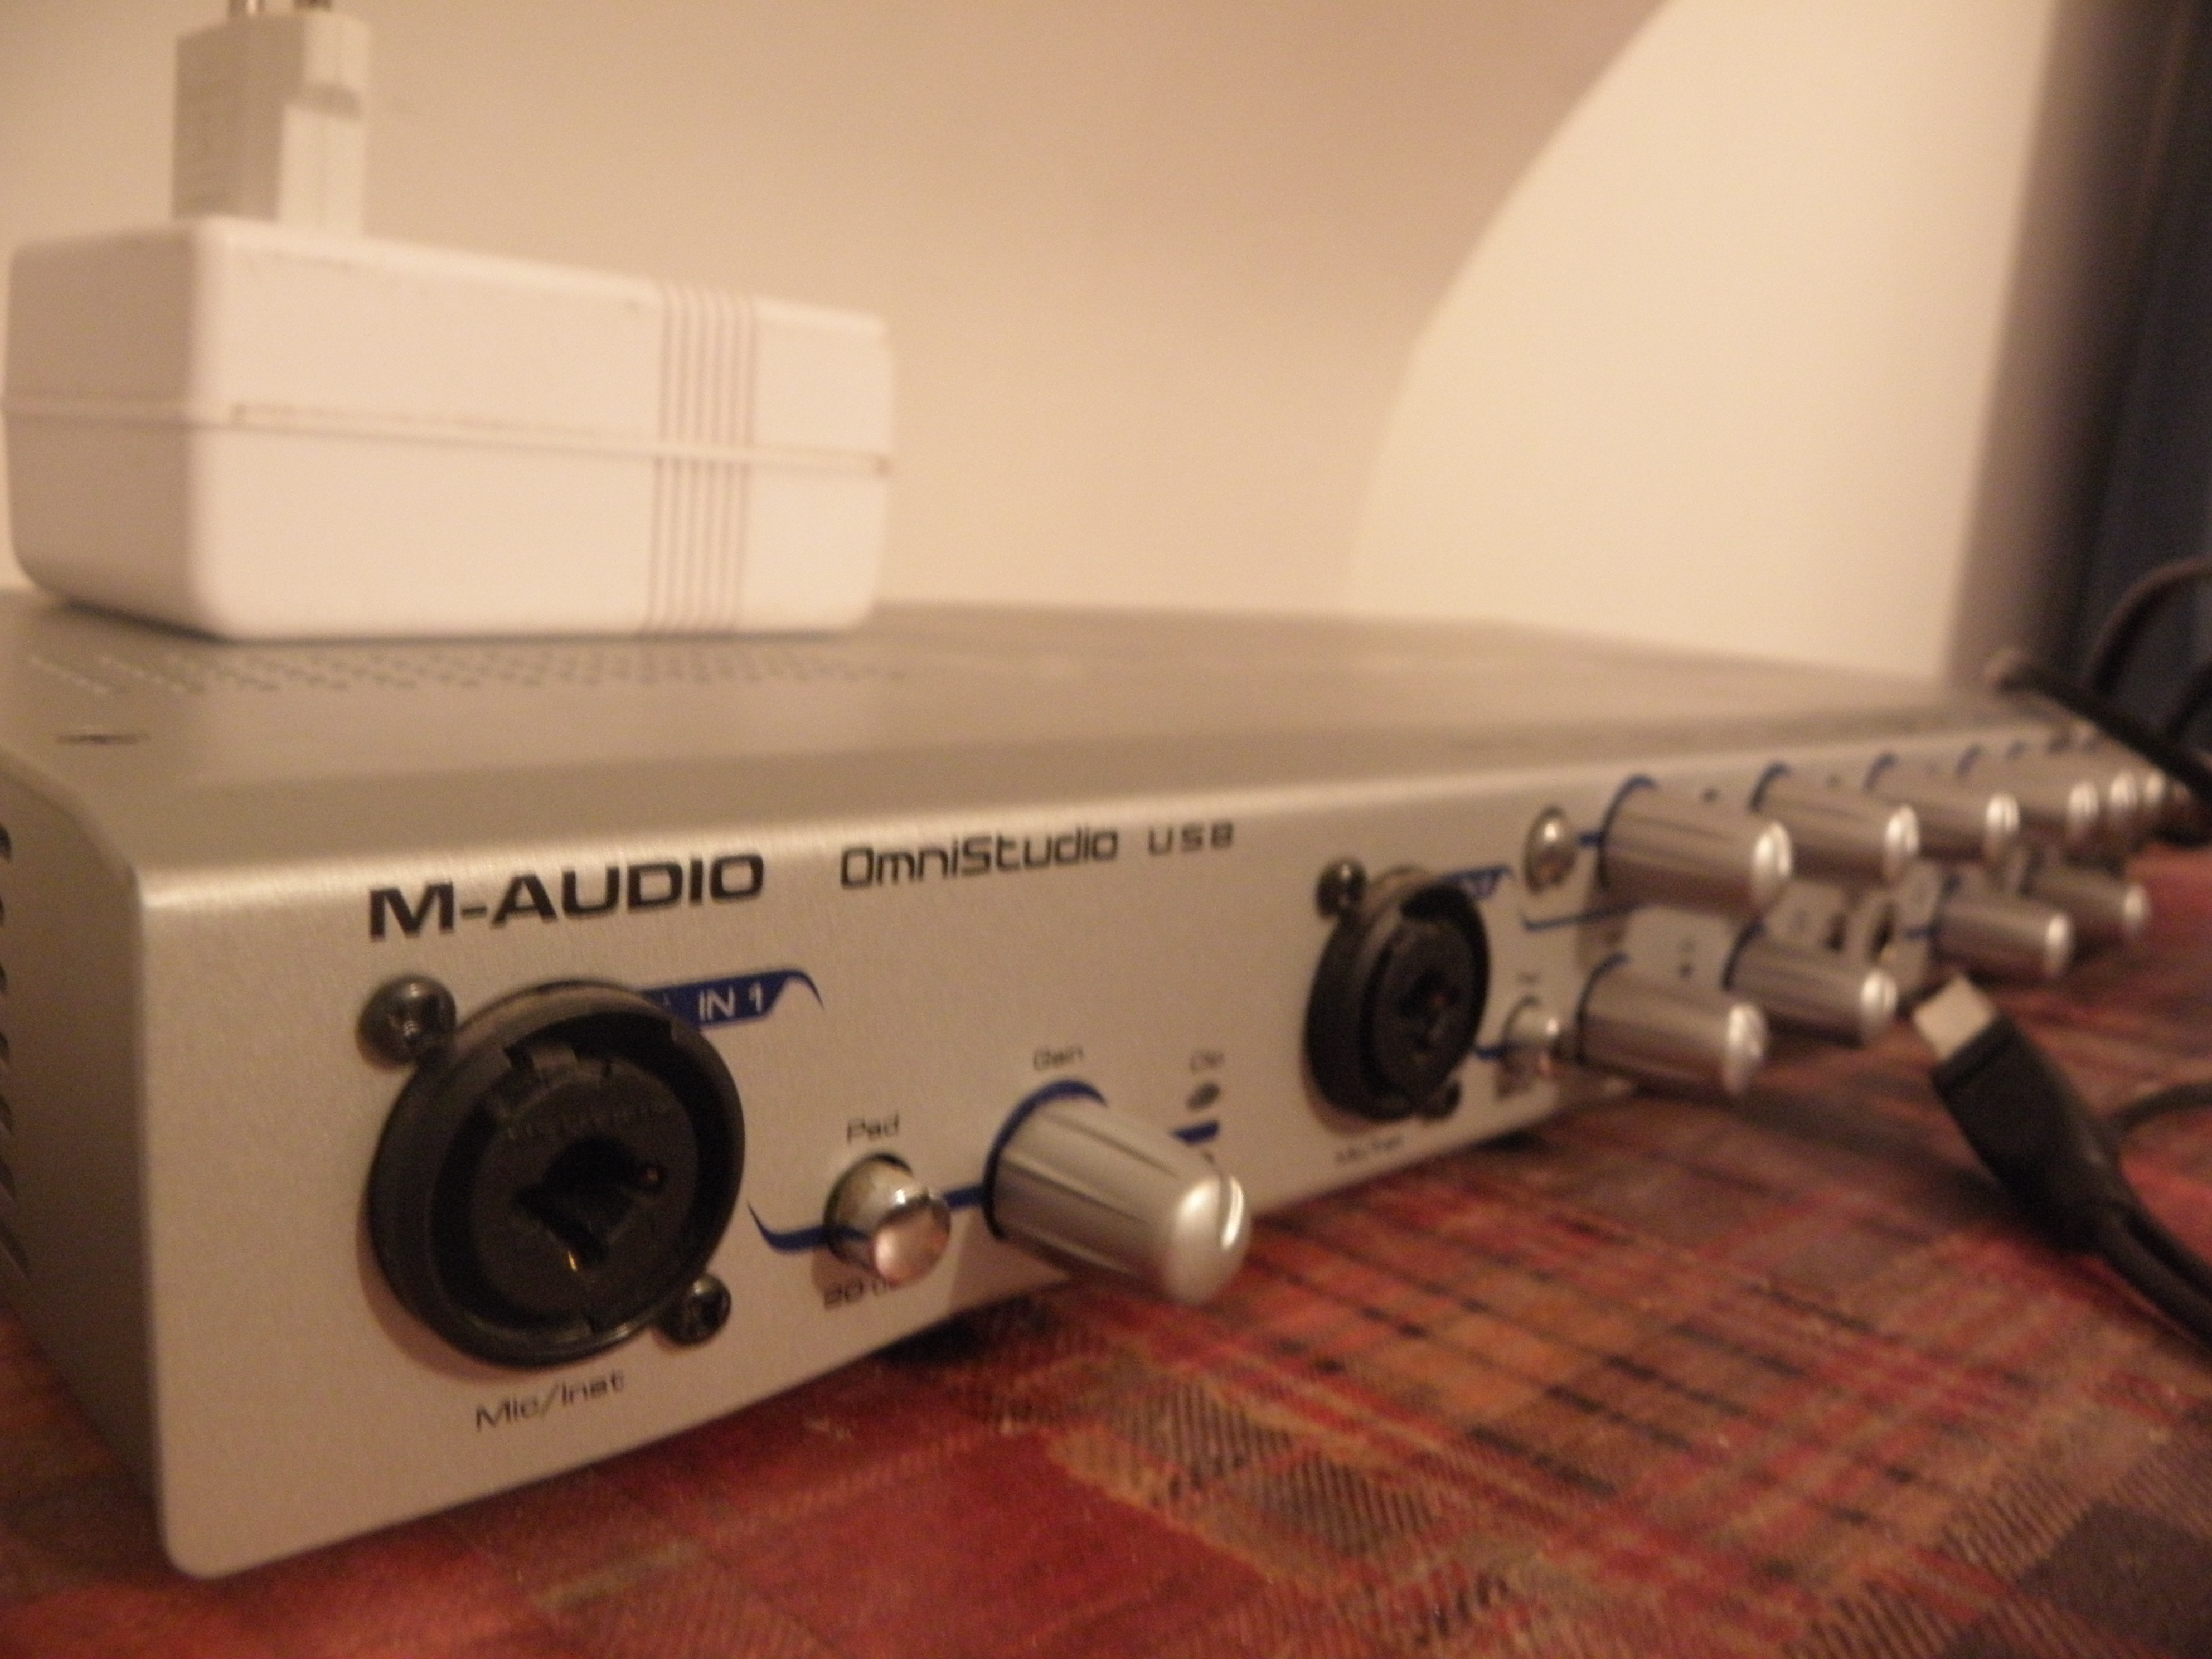 M-audio omni studio